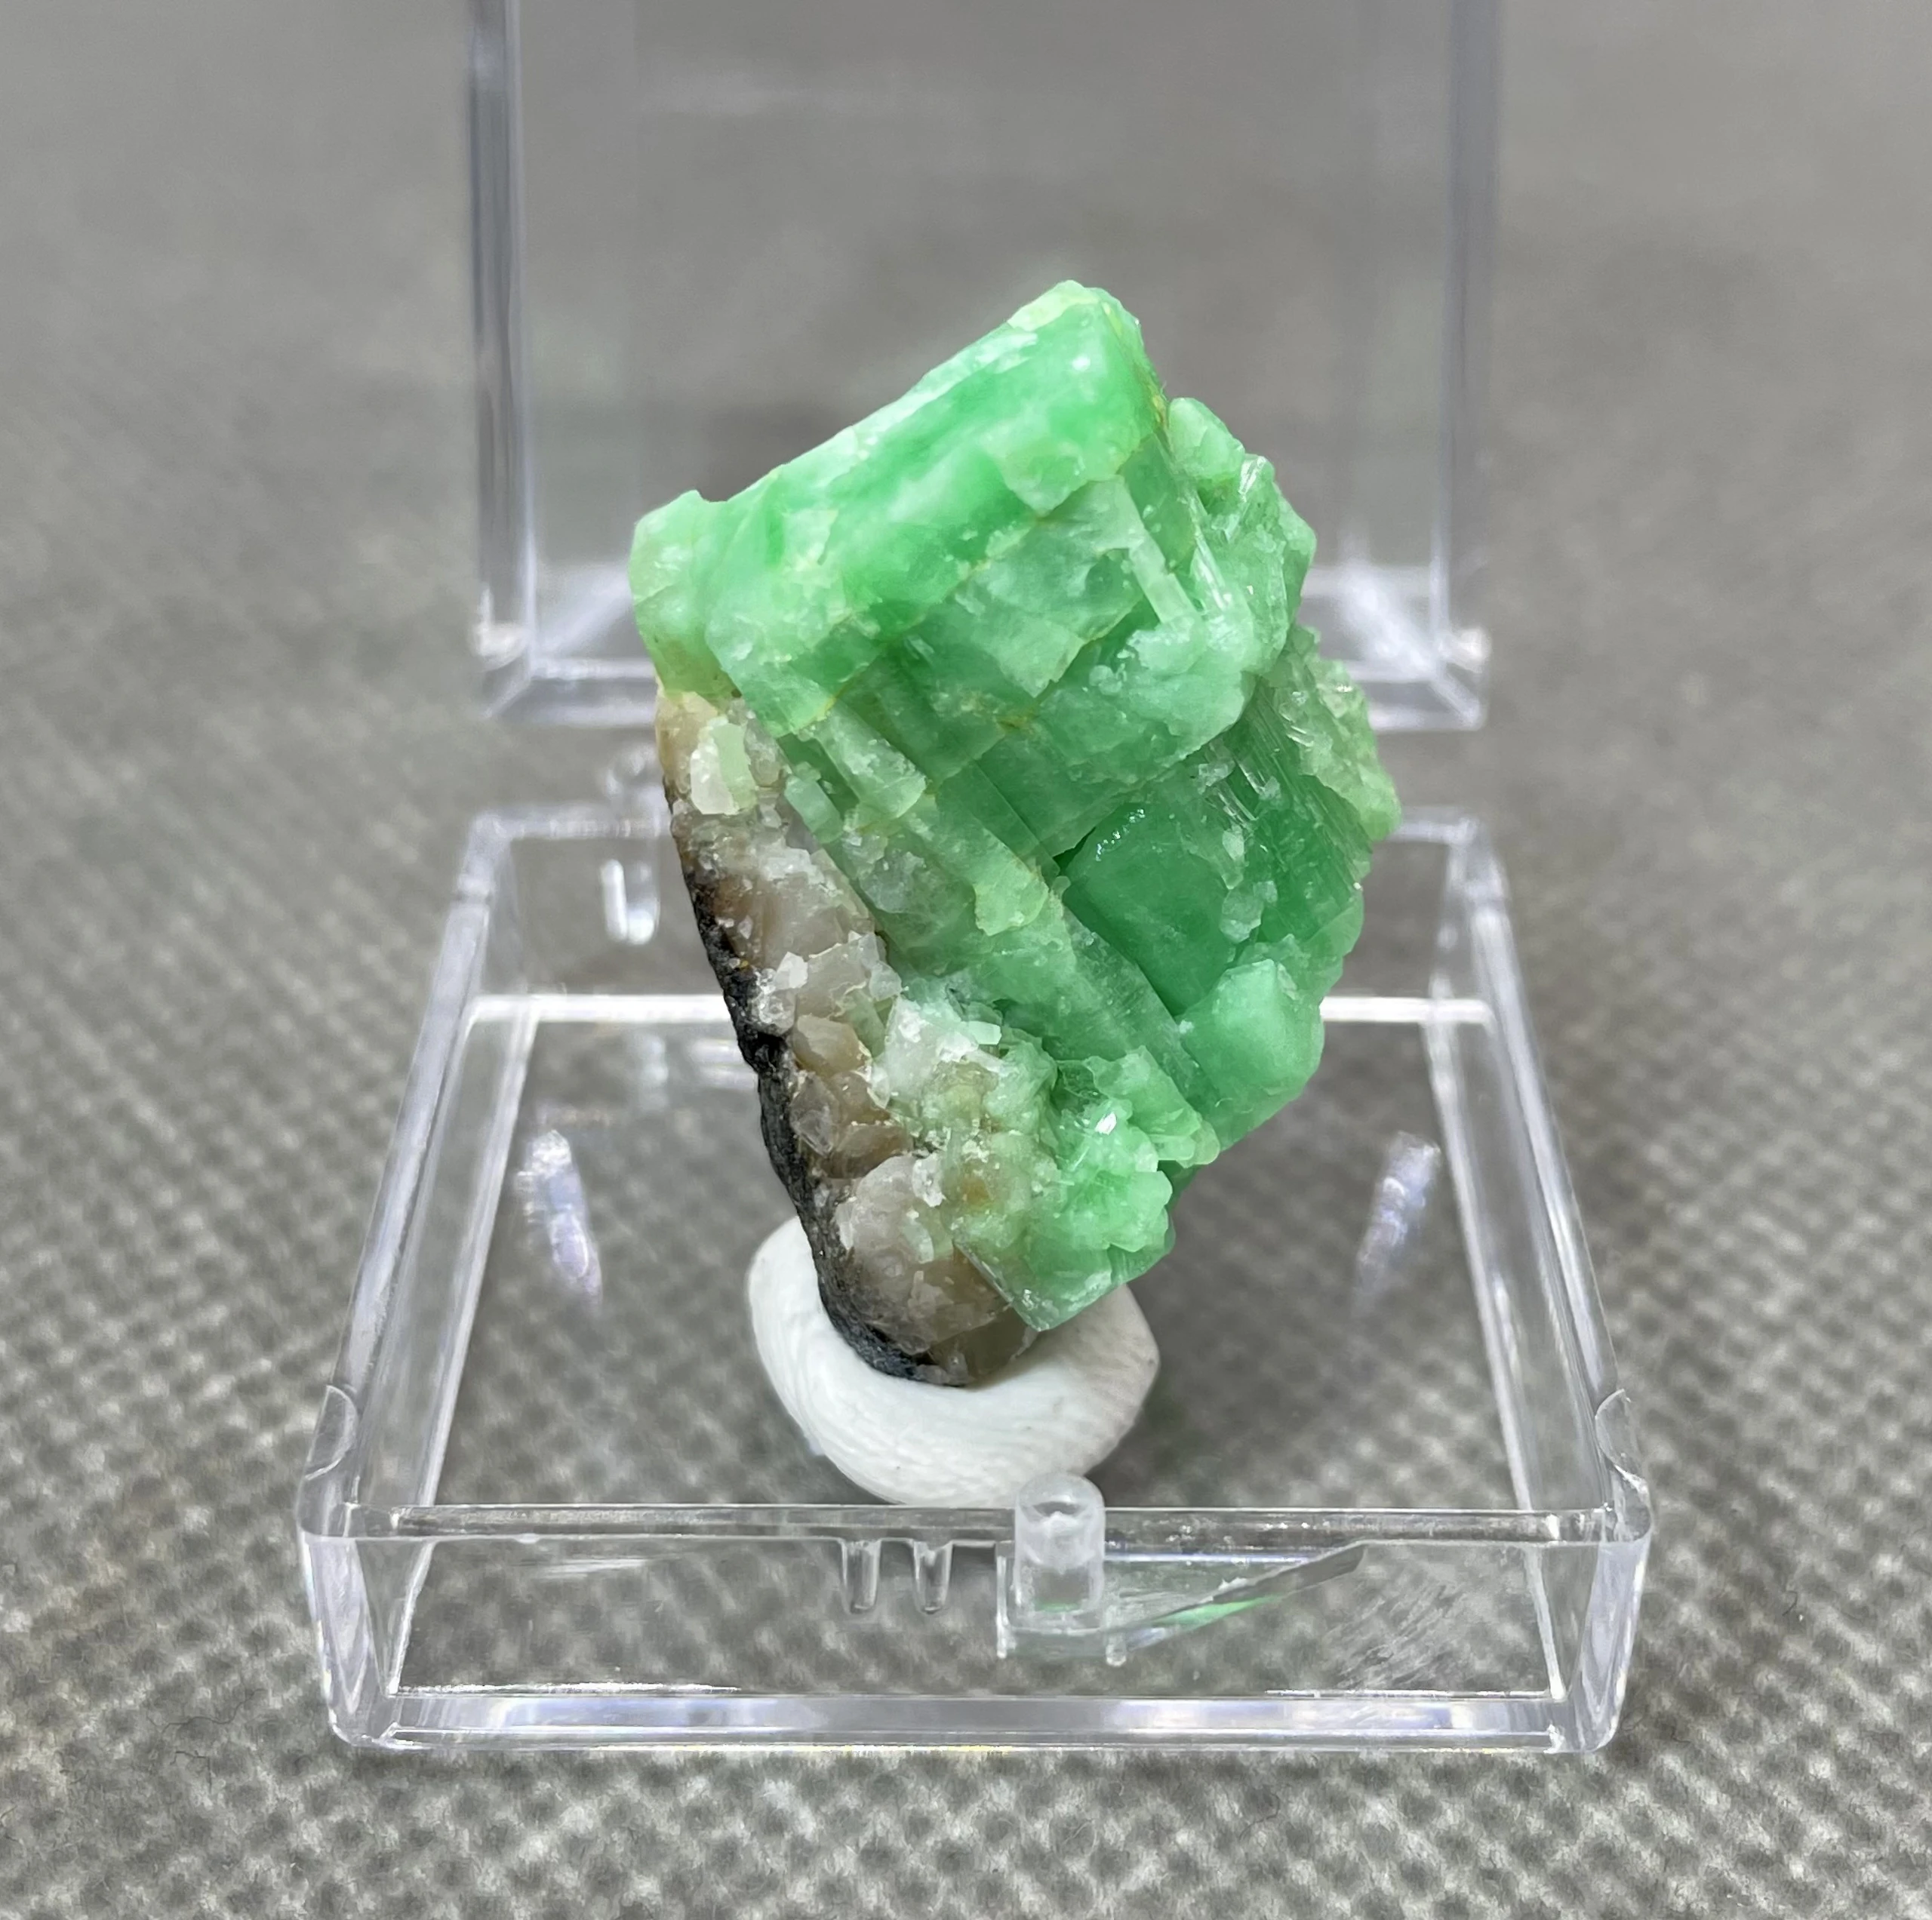 

Новинка! 100% натуральный Зеленый Изумрудный фотоэлемент-искусственные камни и кристаллы кварца (размер коробки 3,4 см)